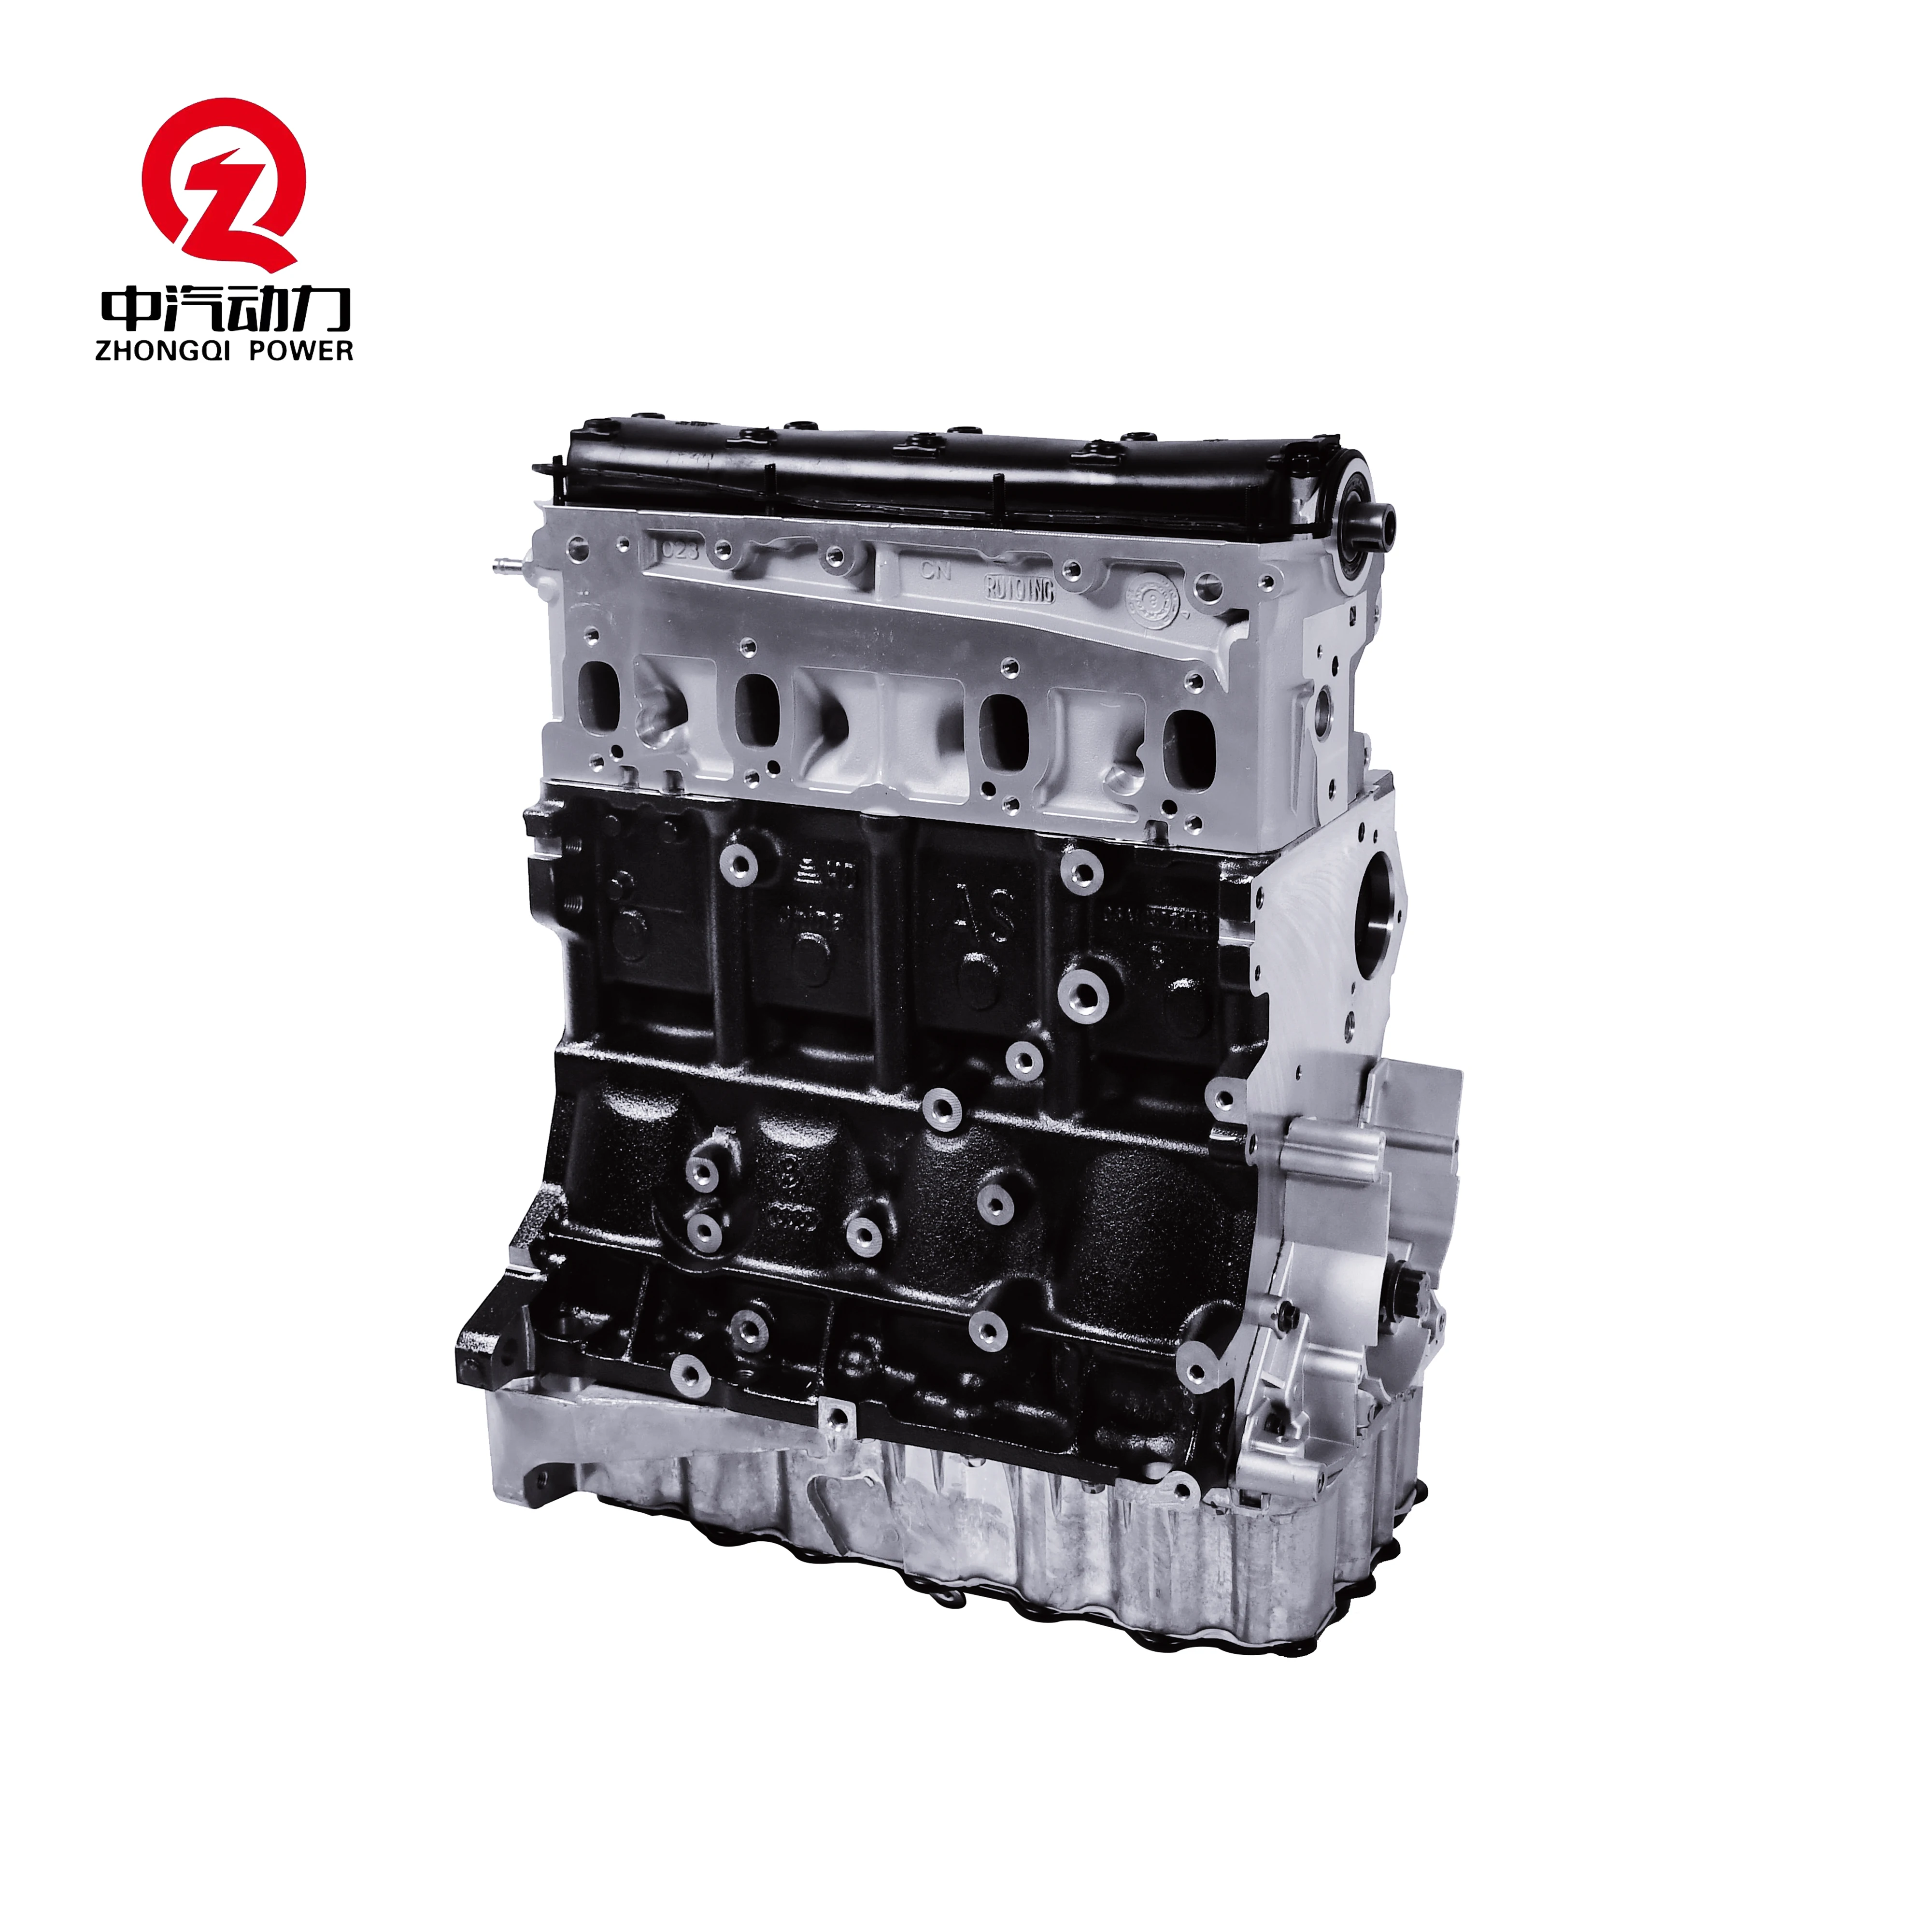 

EA113 BJZ Auto Engine 2.0L Car Motor Auto Parts For Magotan Sagitar